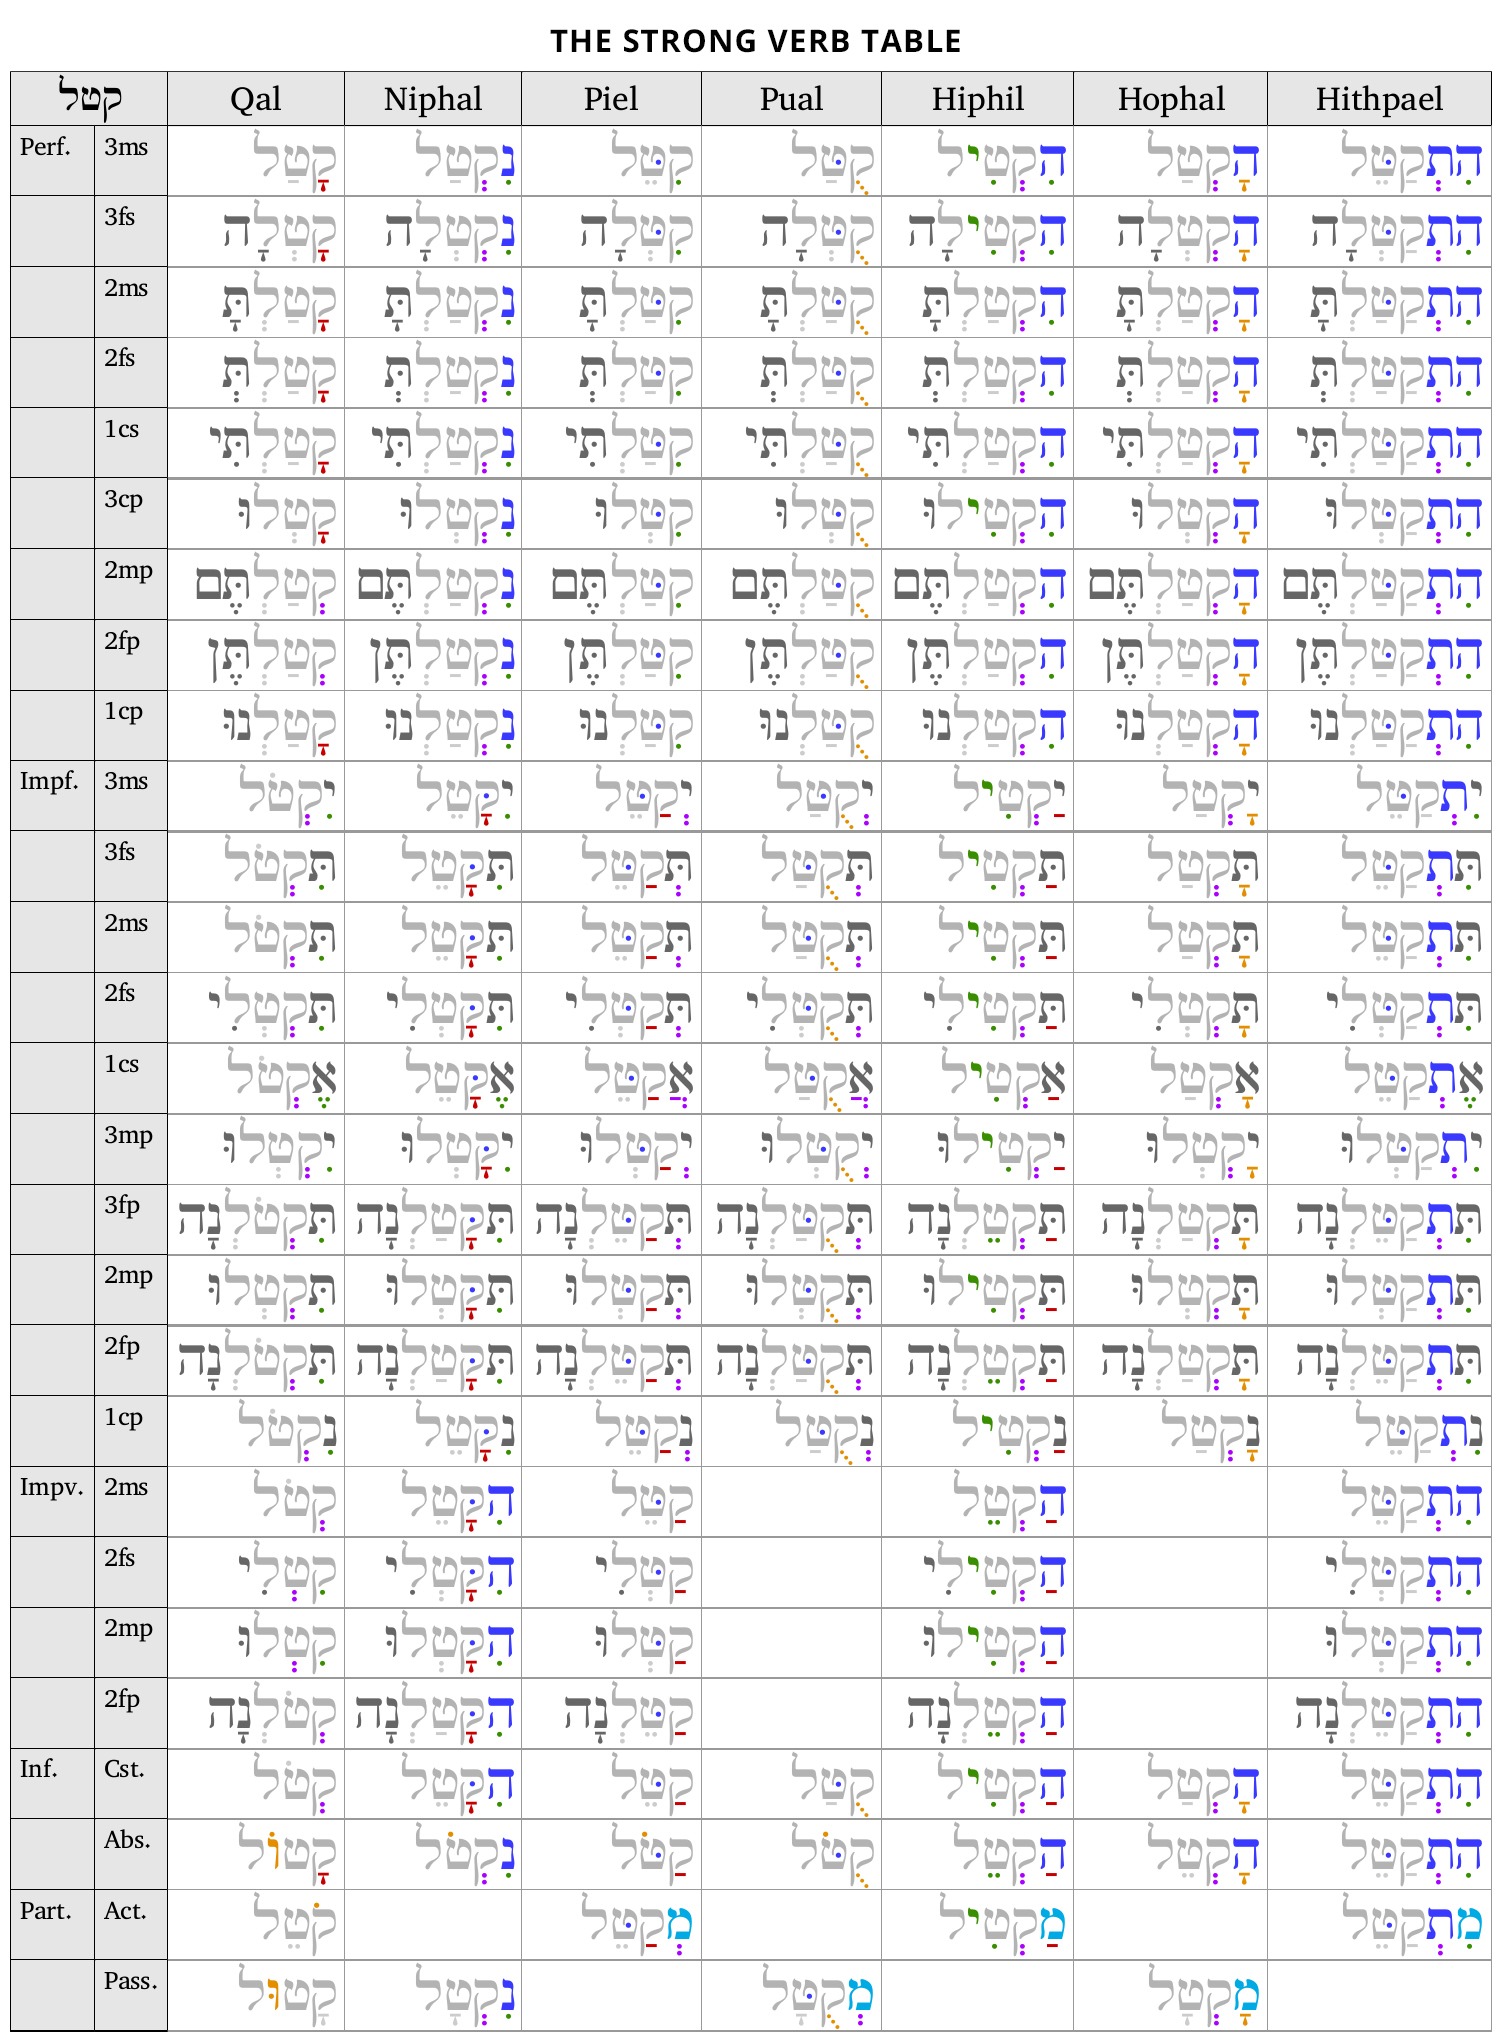 Hebrew verb conjugation table